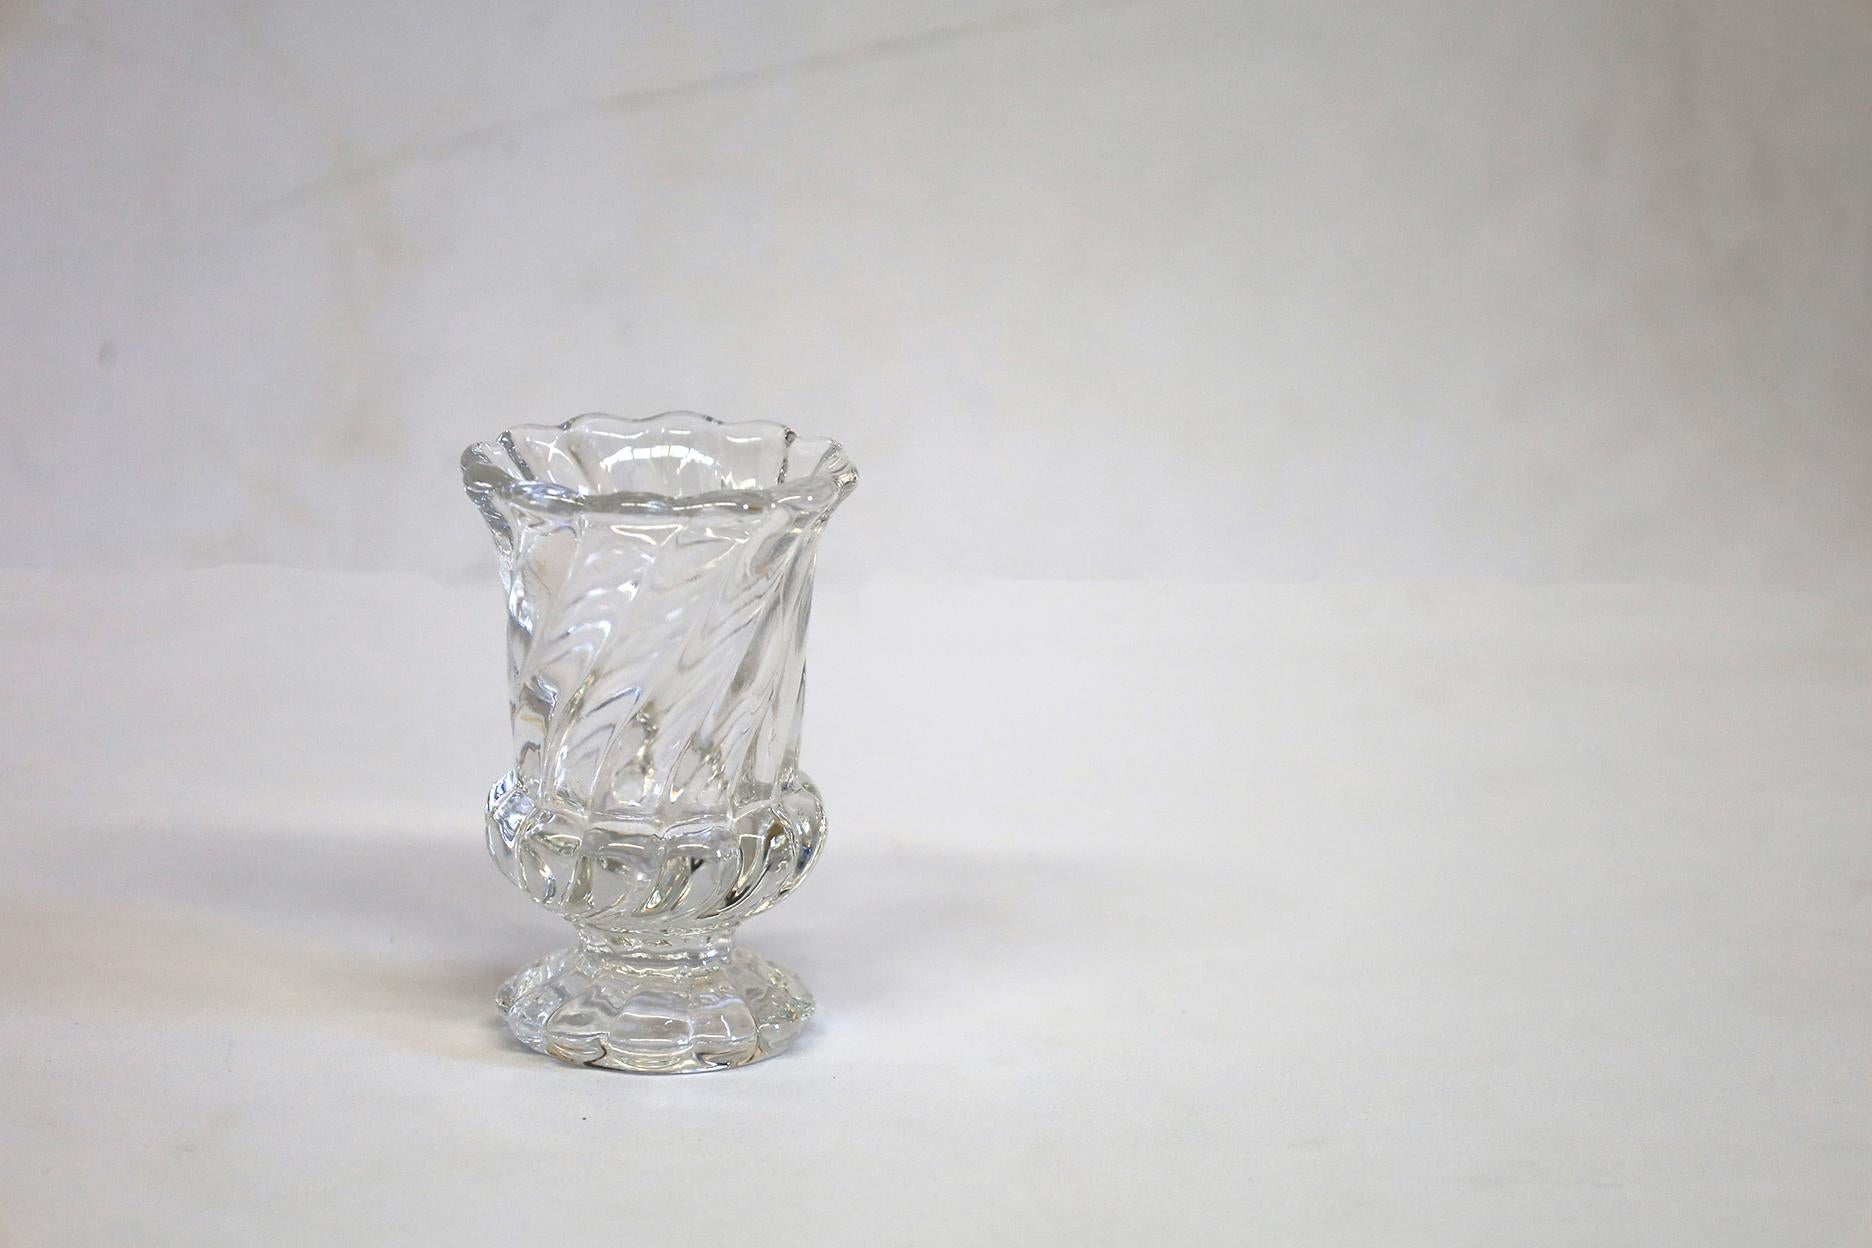 Sehr praktisch und doch elegantes Kristall  Zahnstocherhalter aus der berühmten Glasmanufaktur Baccarat.
Perfekter Zustand. Gestempelt.